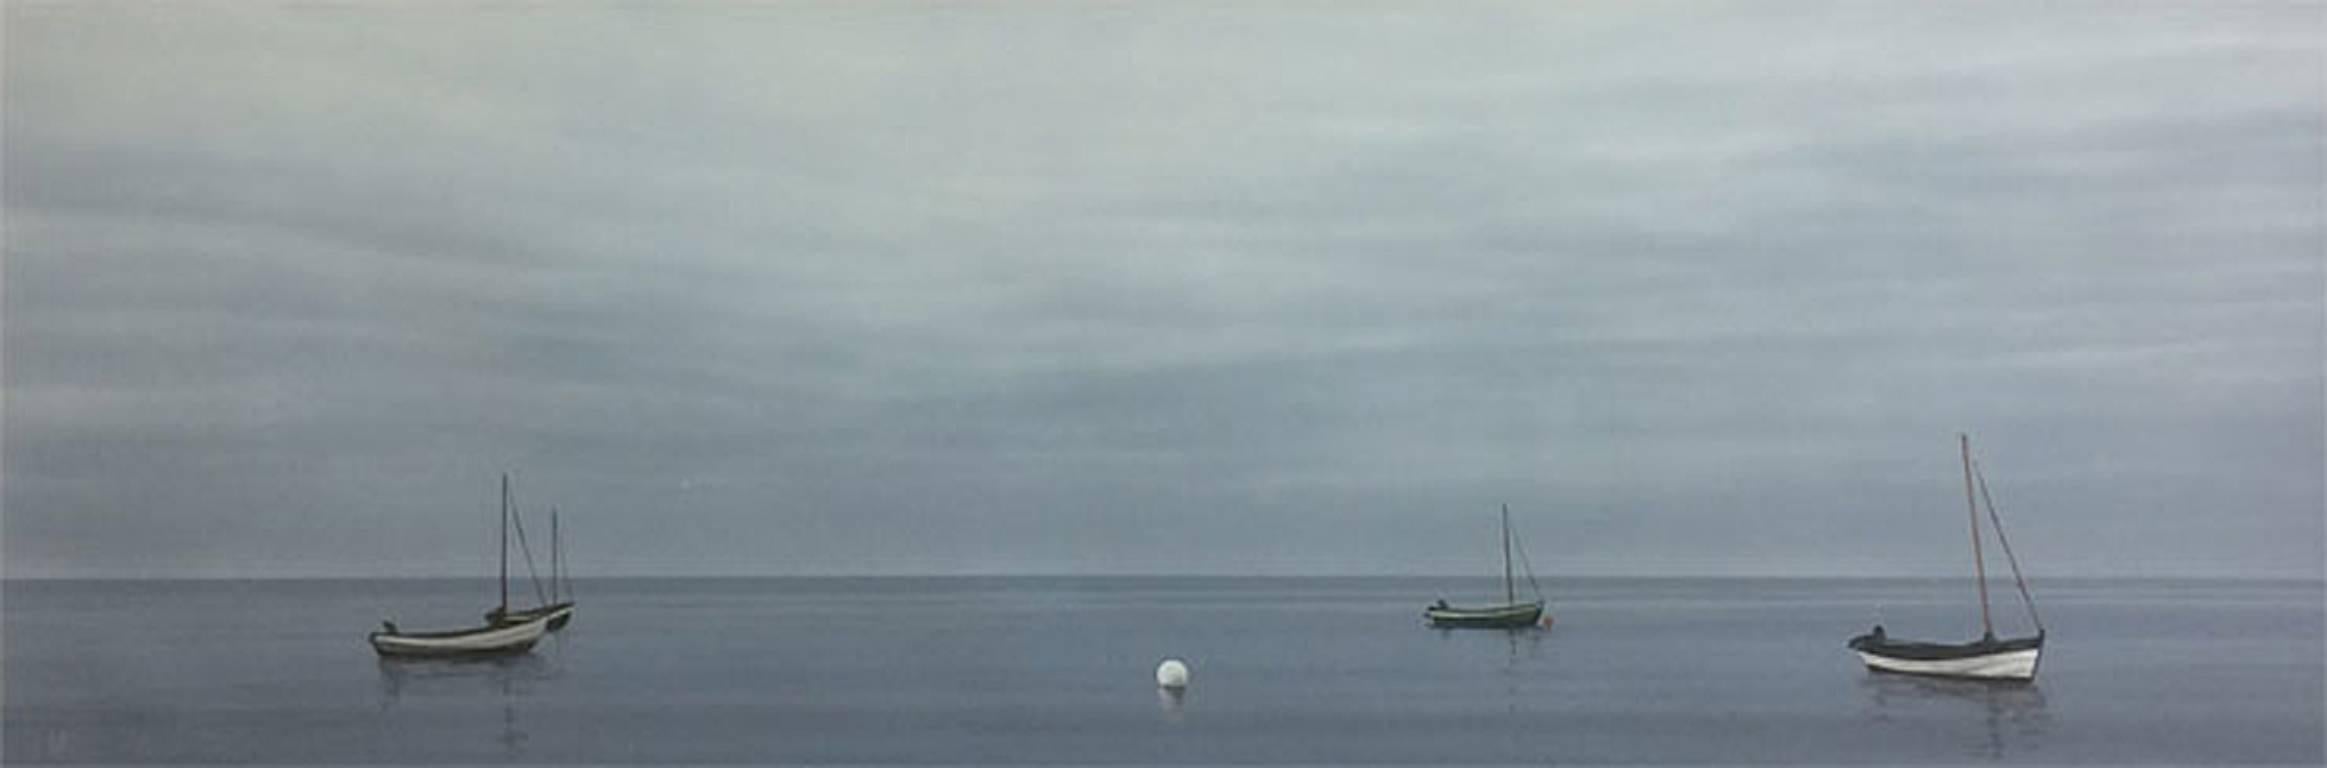 Dawn with Boats gris - peinture contemporaine de paysage de plage de bord de mer